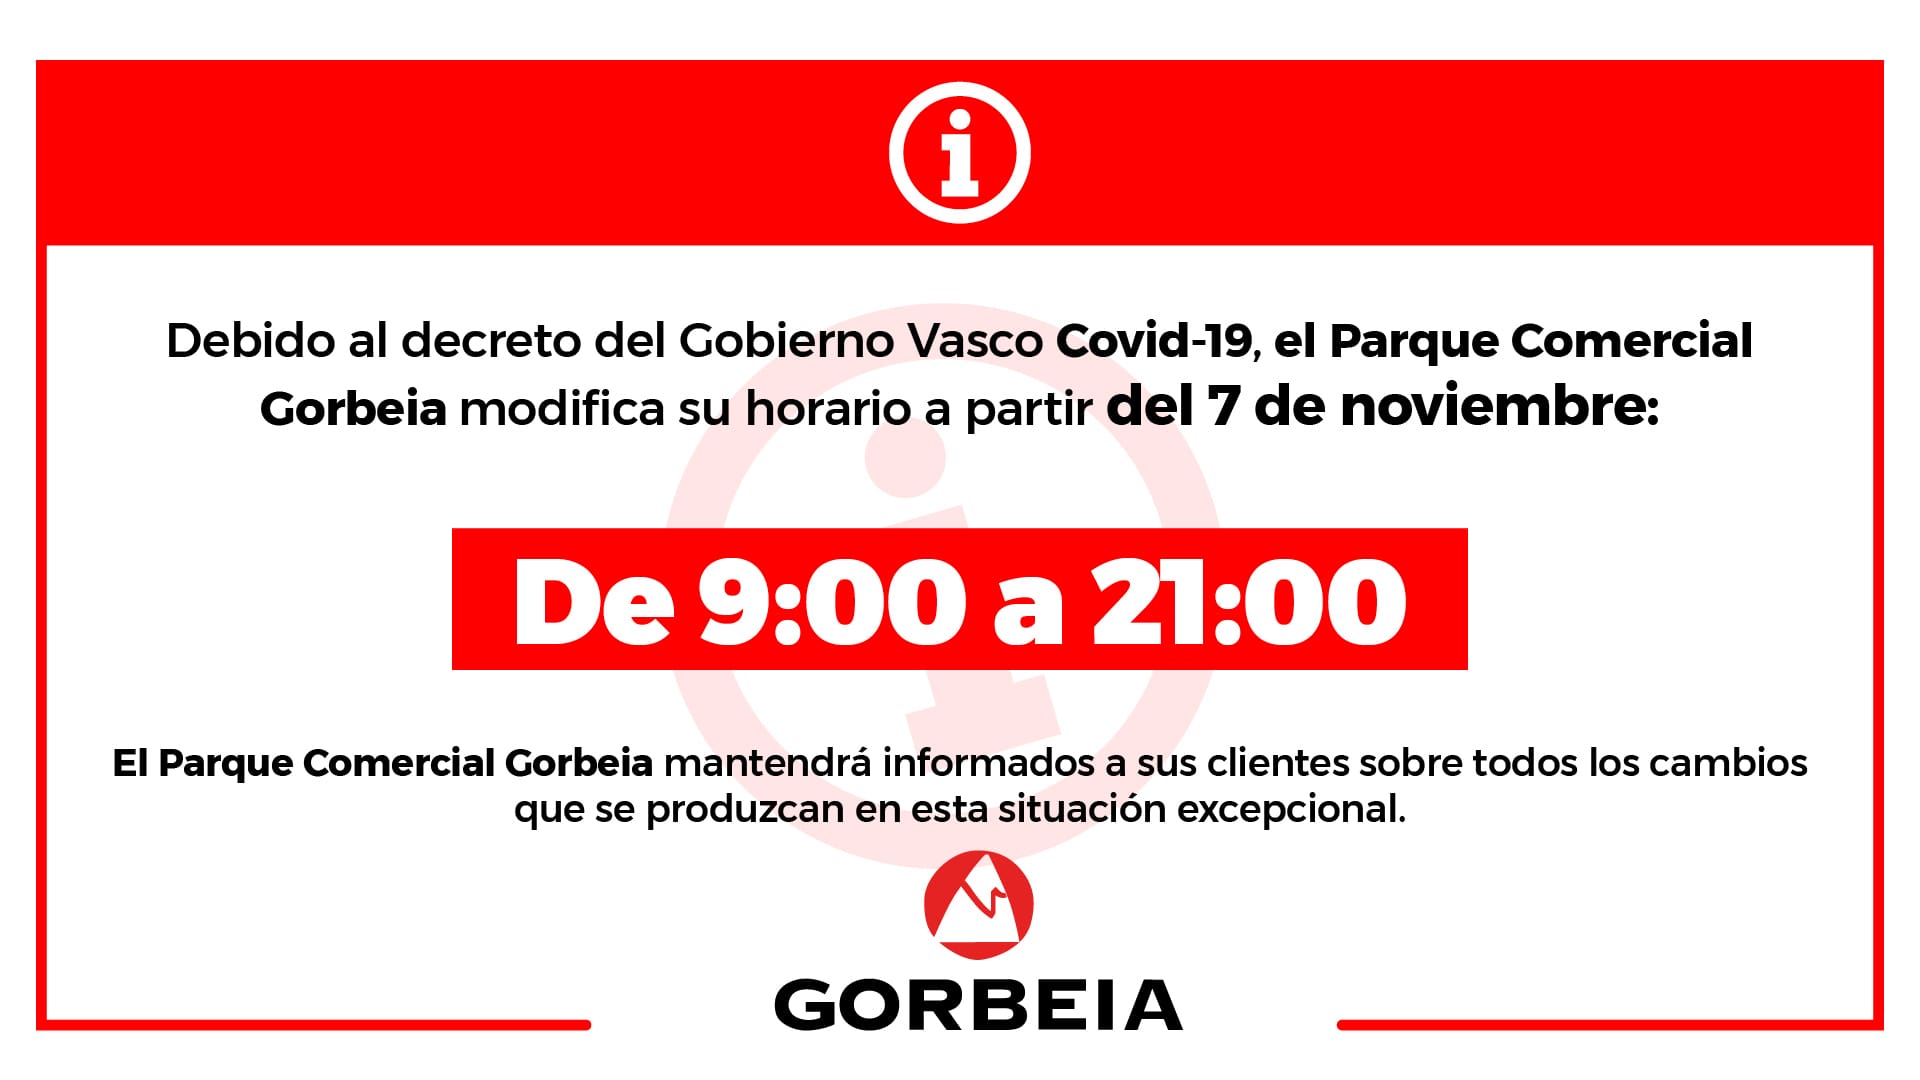 Nuevo horario en Gorbeia (Decreto Gobierno Vasco Covid 19)